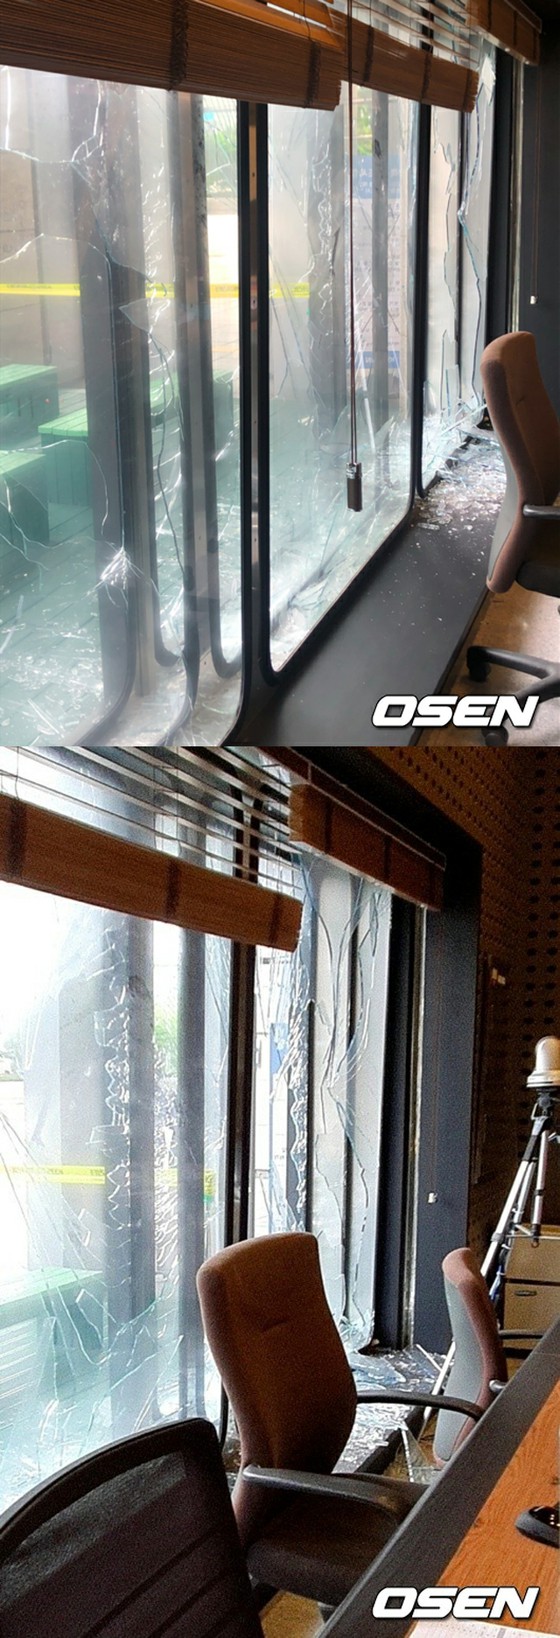 KBS, một trường hợp cửa sổ kính bị vỡ tại một phòng thu mở radio trong khi phát sóng trực tiếp ... Một cảnh gây sốc mà không làm tổn hại đến tính mạng